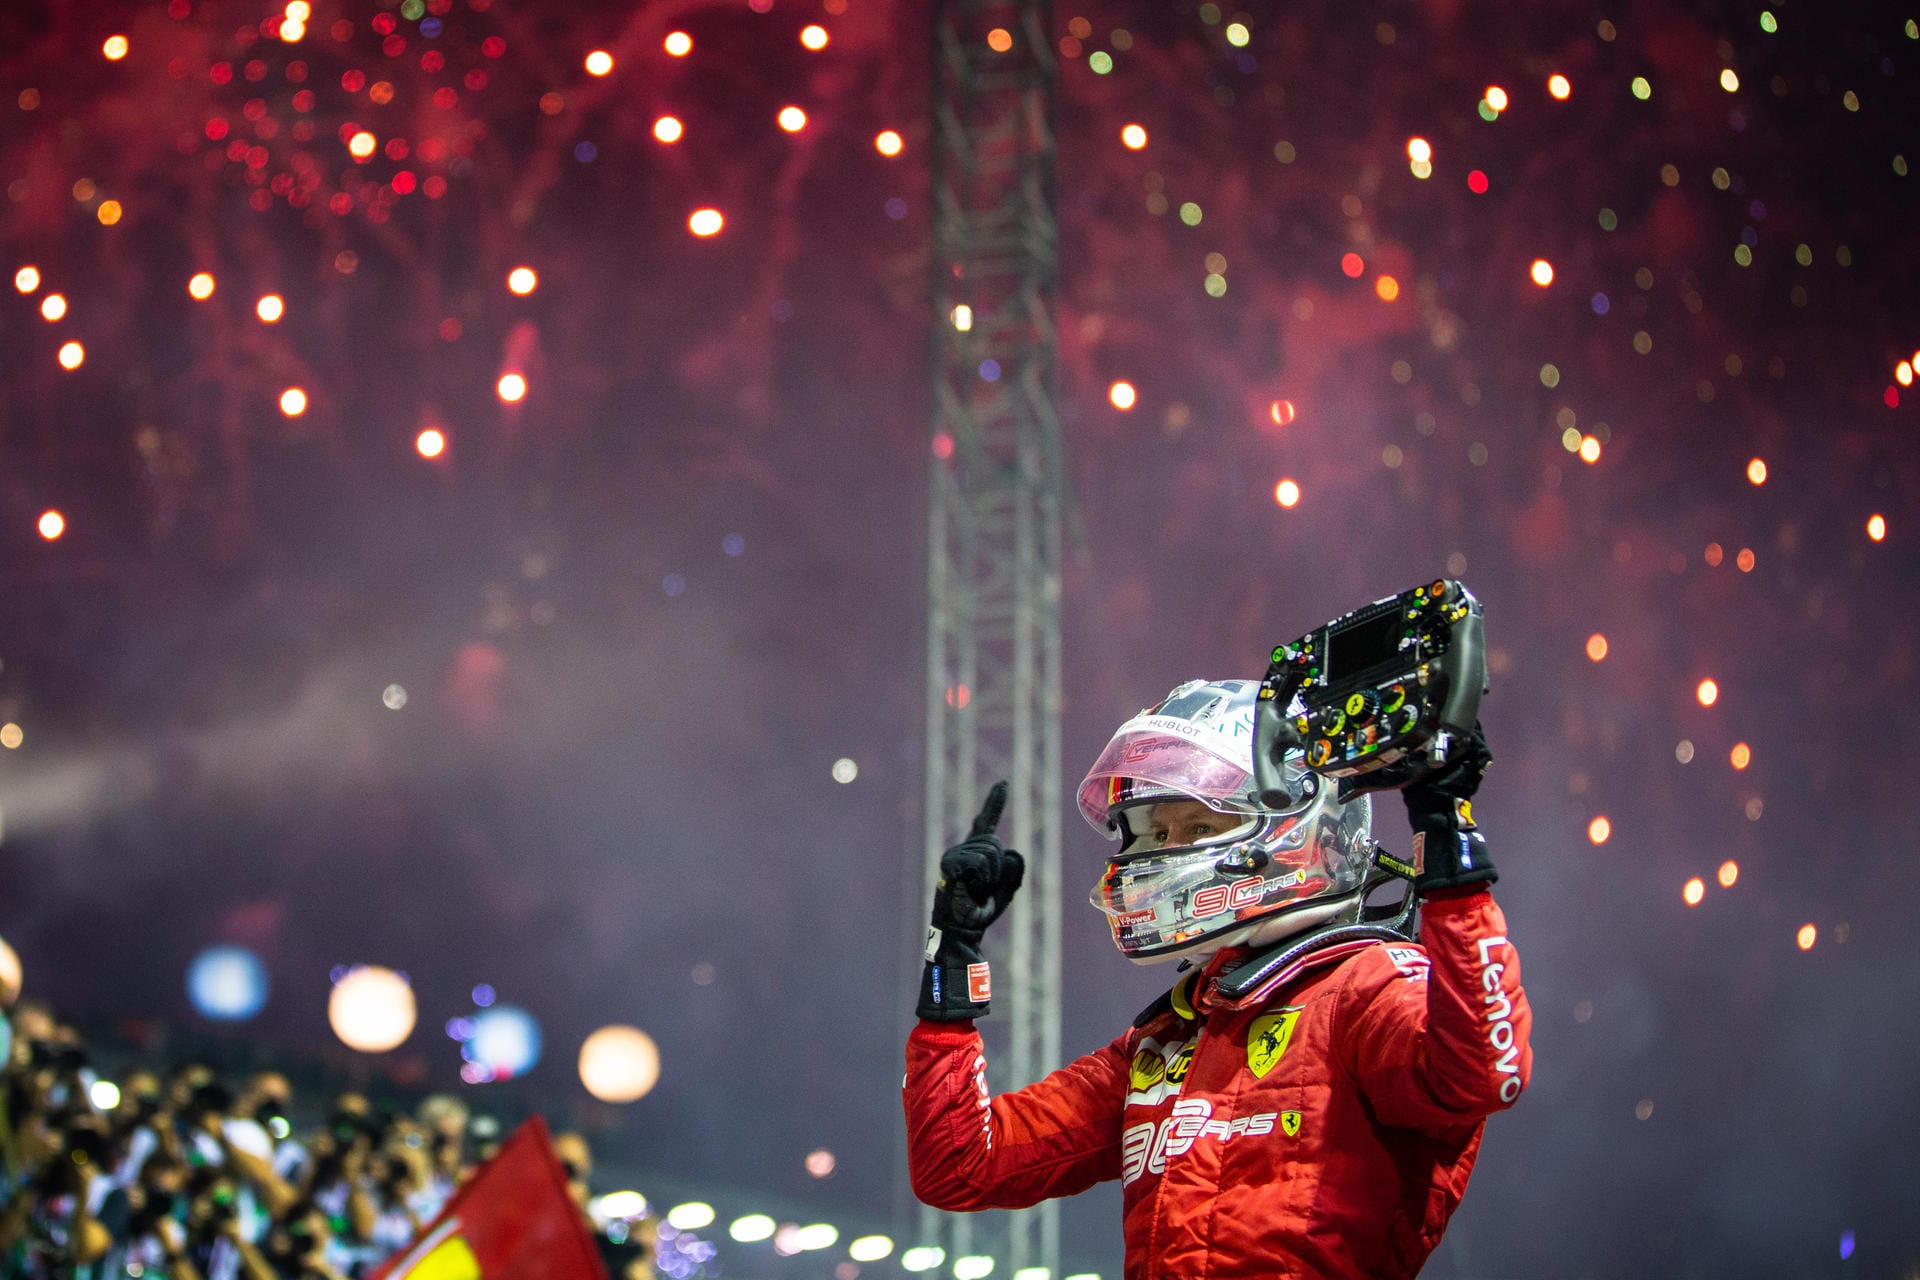 "The Guardian": "Als Sebastian Vettel über die Ziellinie fuhr und den Großen Preis von Singapur gewann, erleuchteten Siegesfeuerwerke den Abendhimmel. Das Ritual auf den Straßen von Marina Bay endete mit einem Knall. Doch Vettels Sieg ging auf Kosten seines Teamkollegen Charles Leclerc. Zwar beherrschte sich der 21-Jährige am Ende, allerdings nur zähneknirschend und mit der Enttäuschung eines Fahrers, der fest daran glaubt, dass er seinen Teamkollegen und vierfachen Sieger geschlagen hatte - und noch hat."